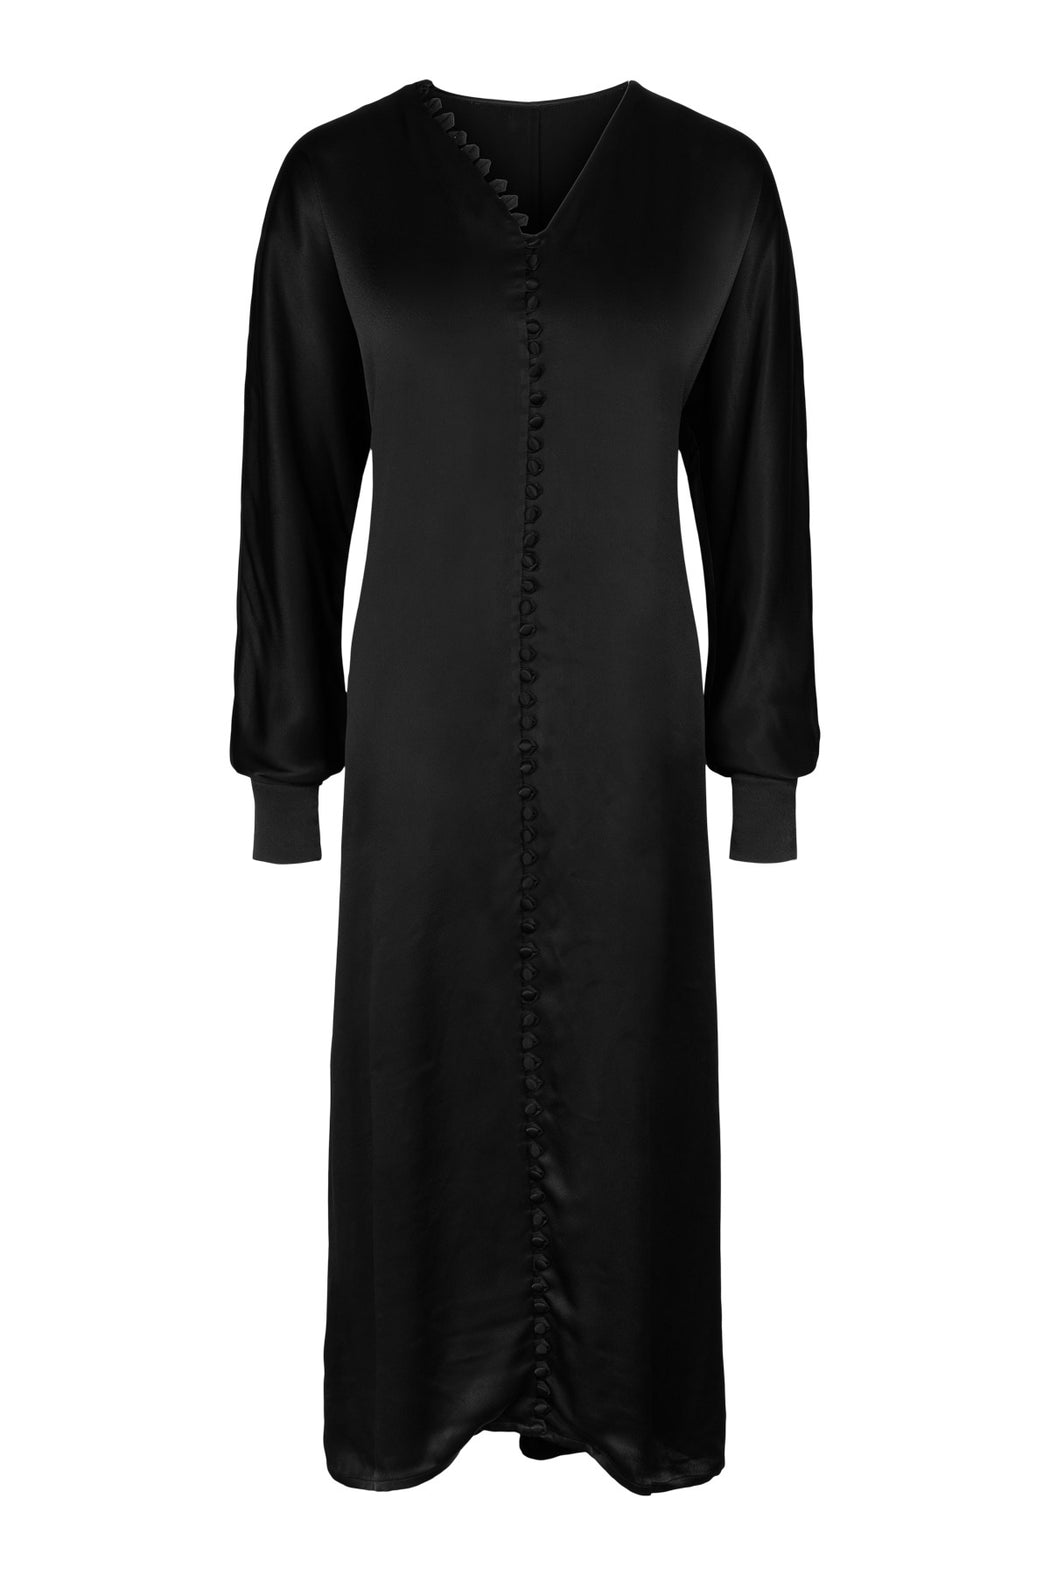 Envelope1976 Cannes dress - Rayon Dress Black